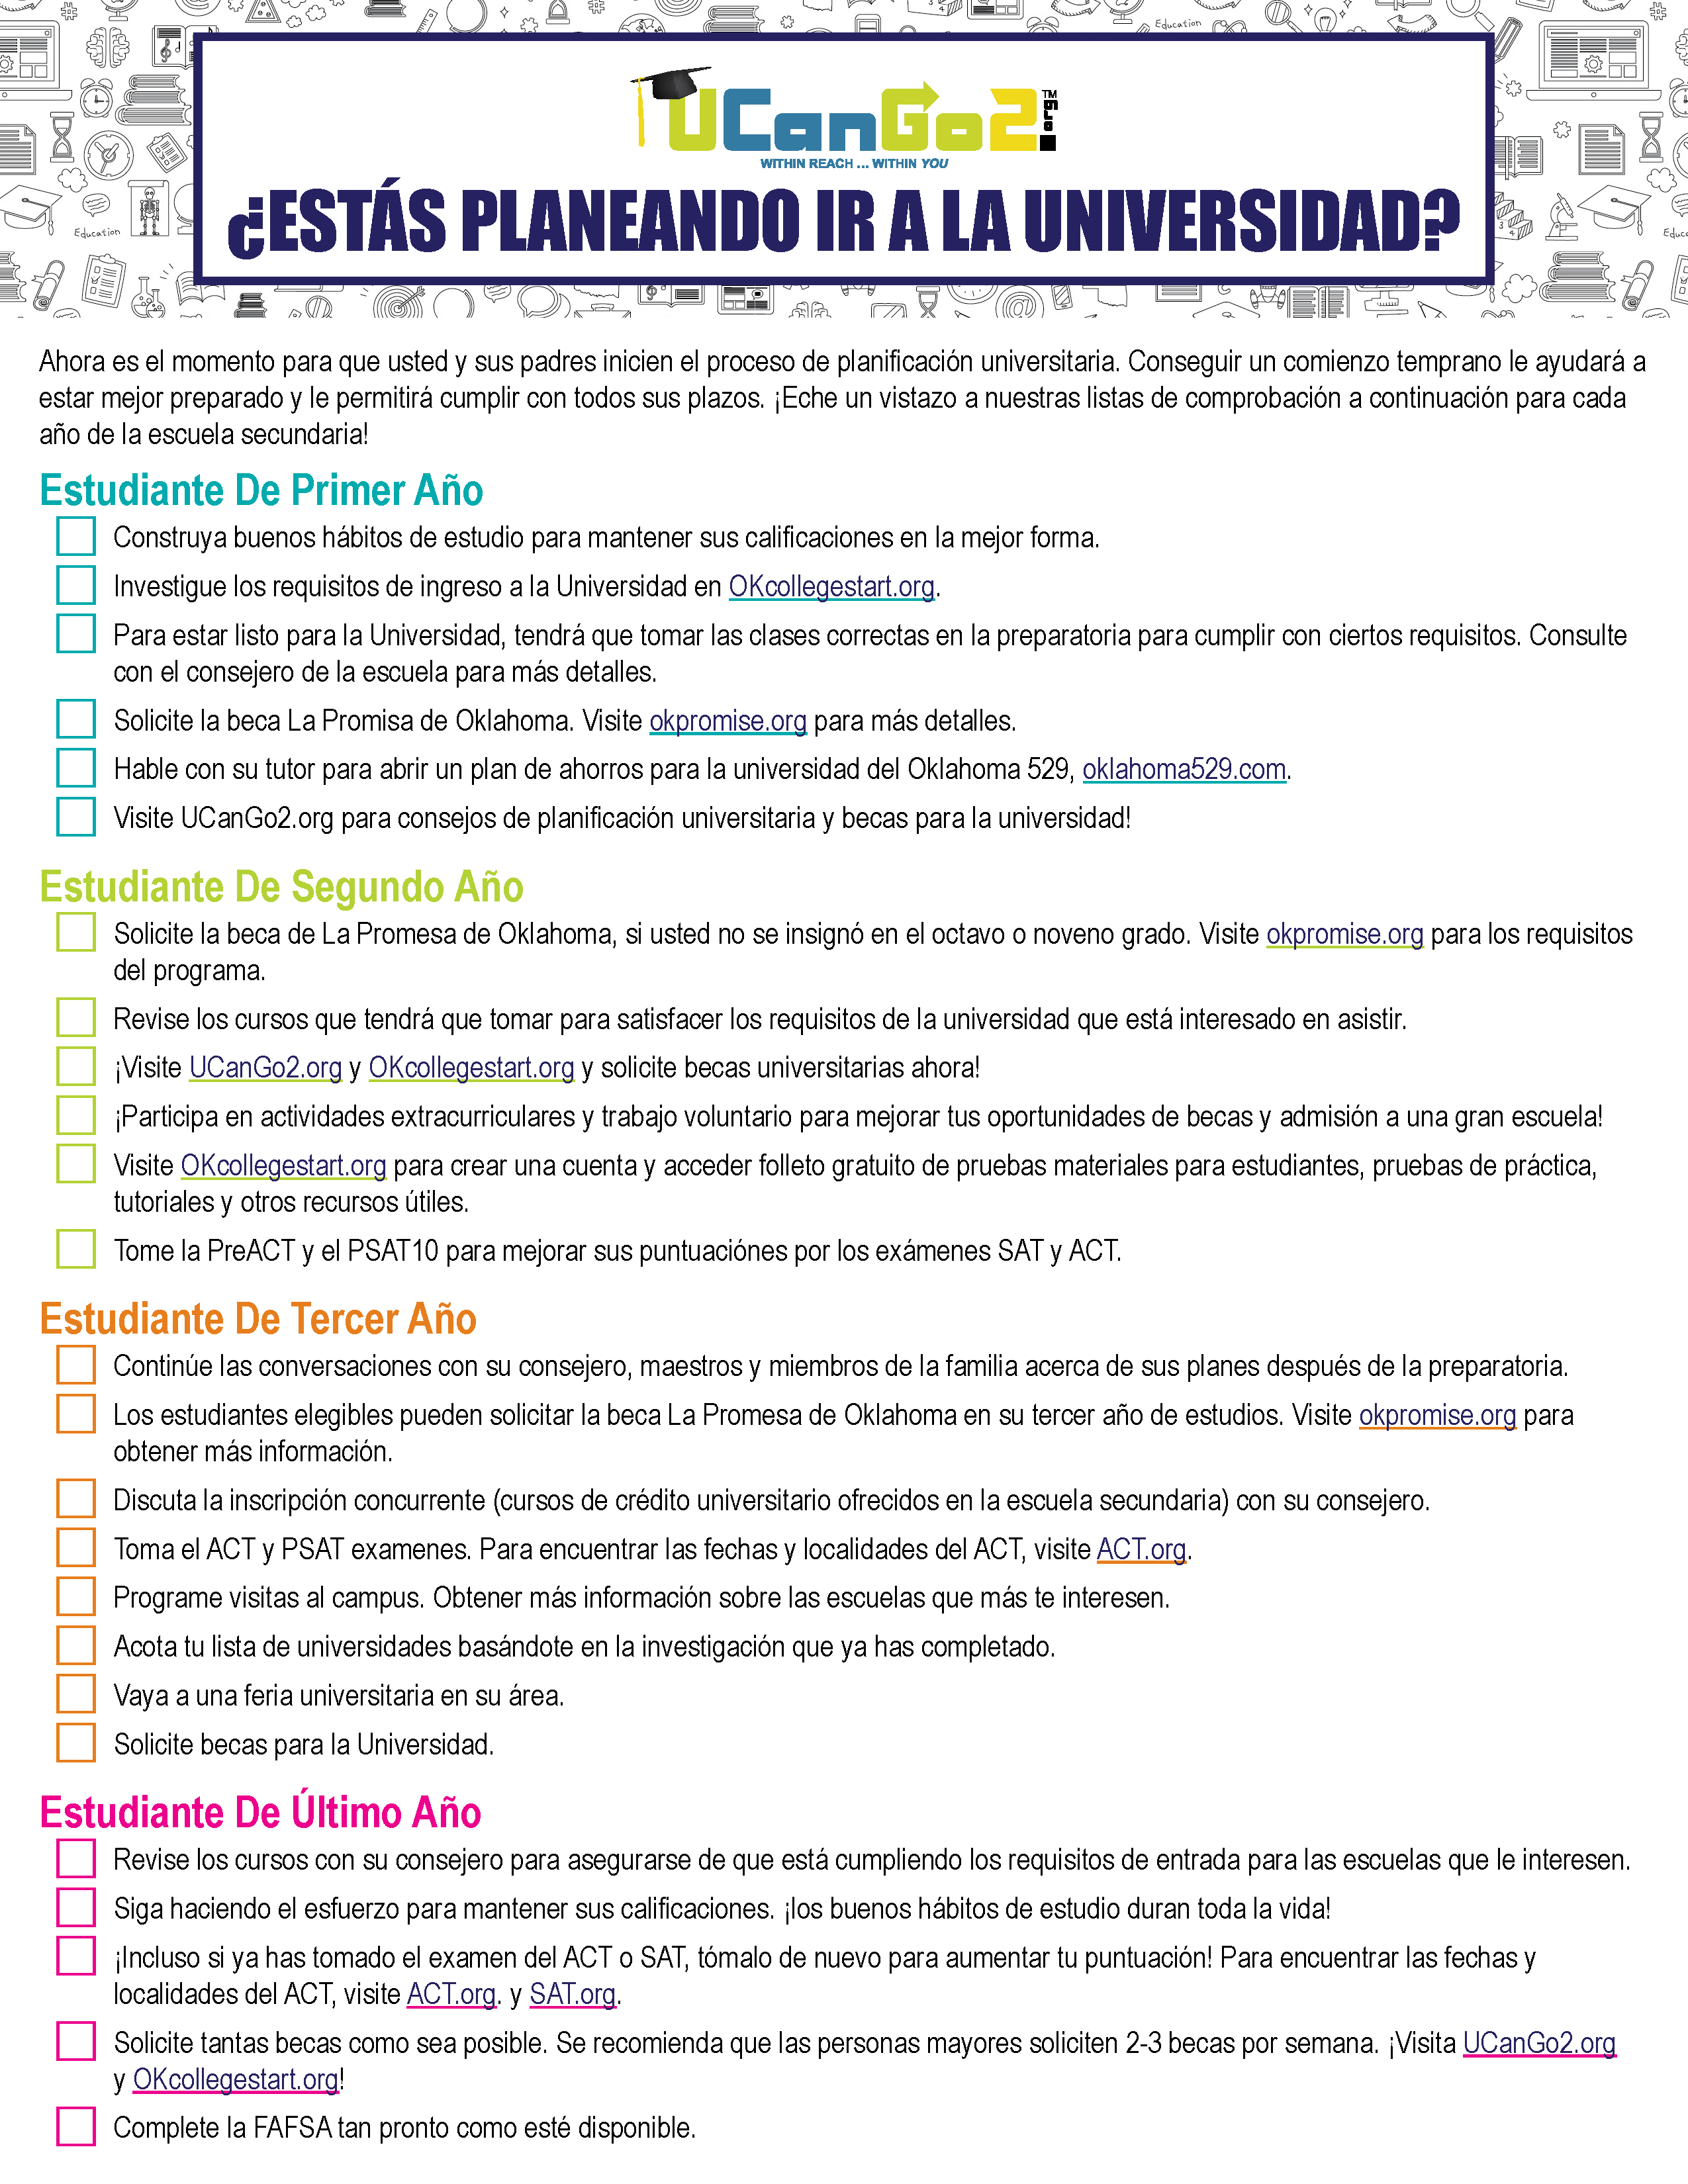 PDF of Spanish Flyer